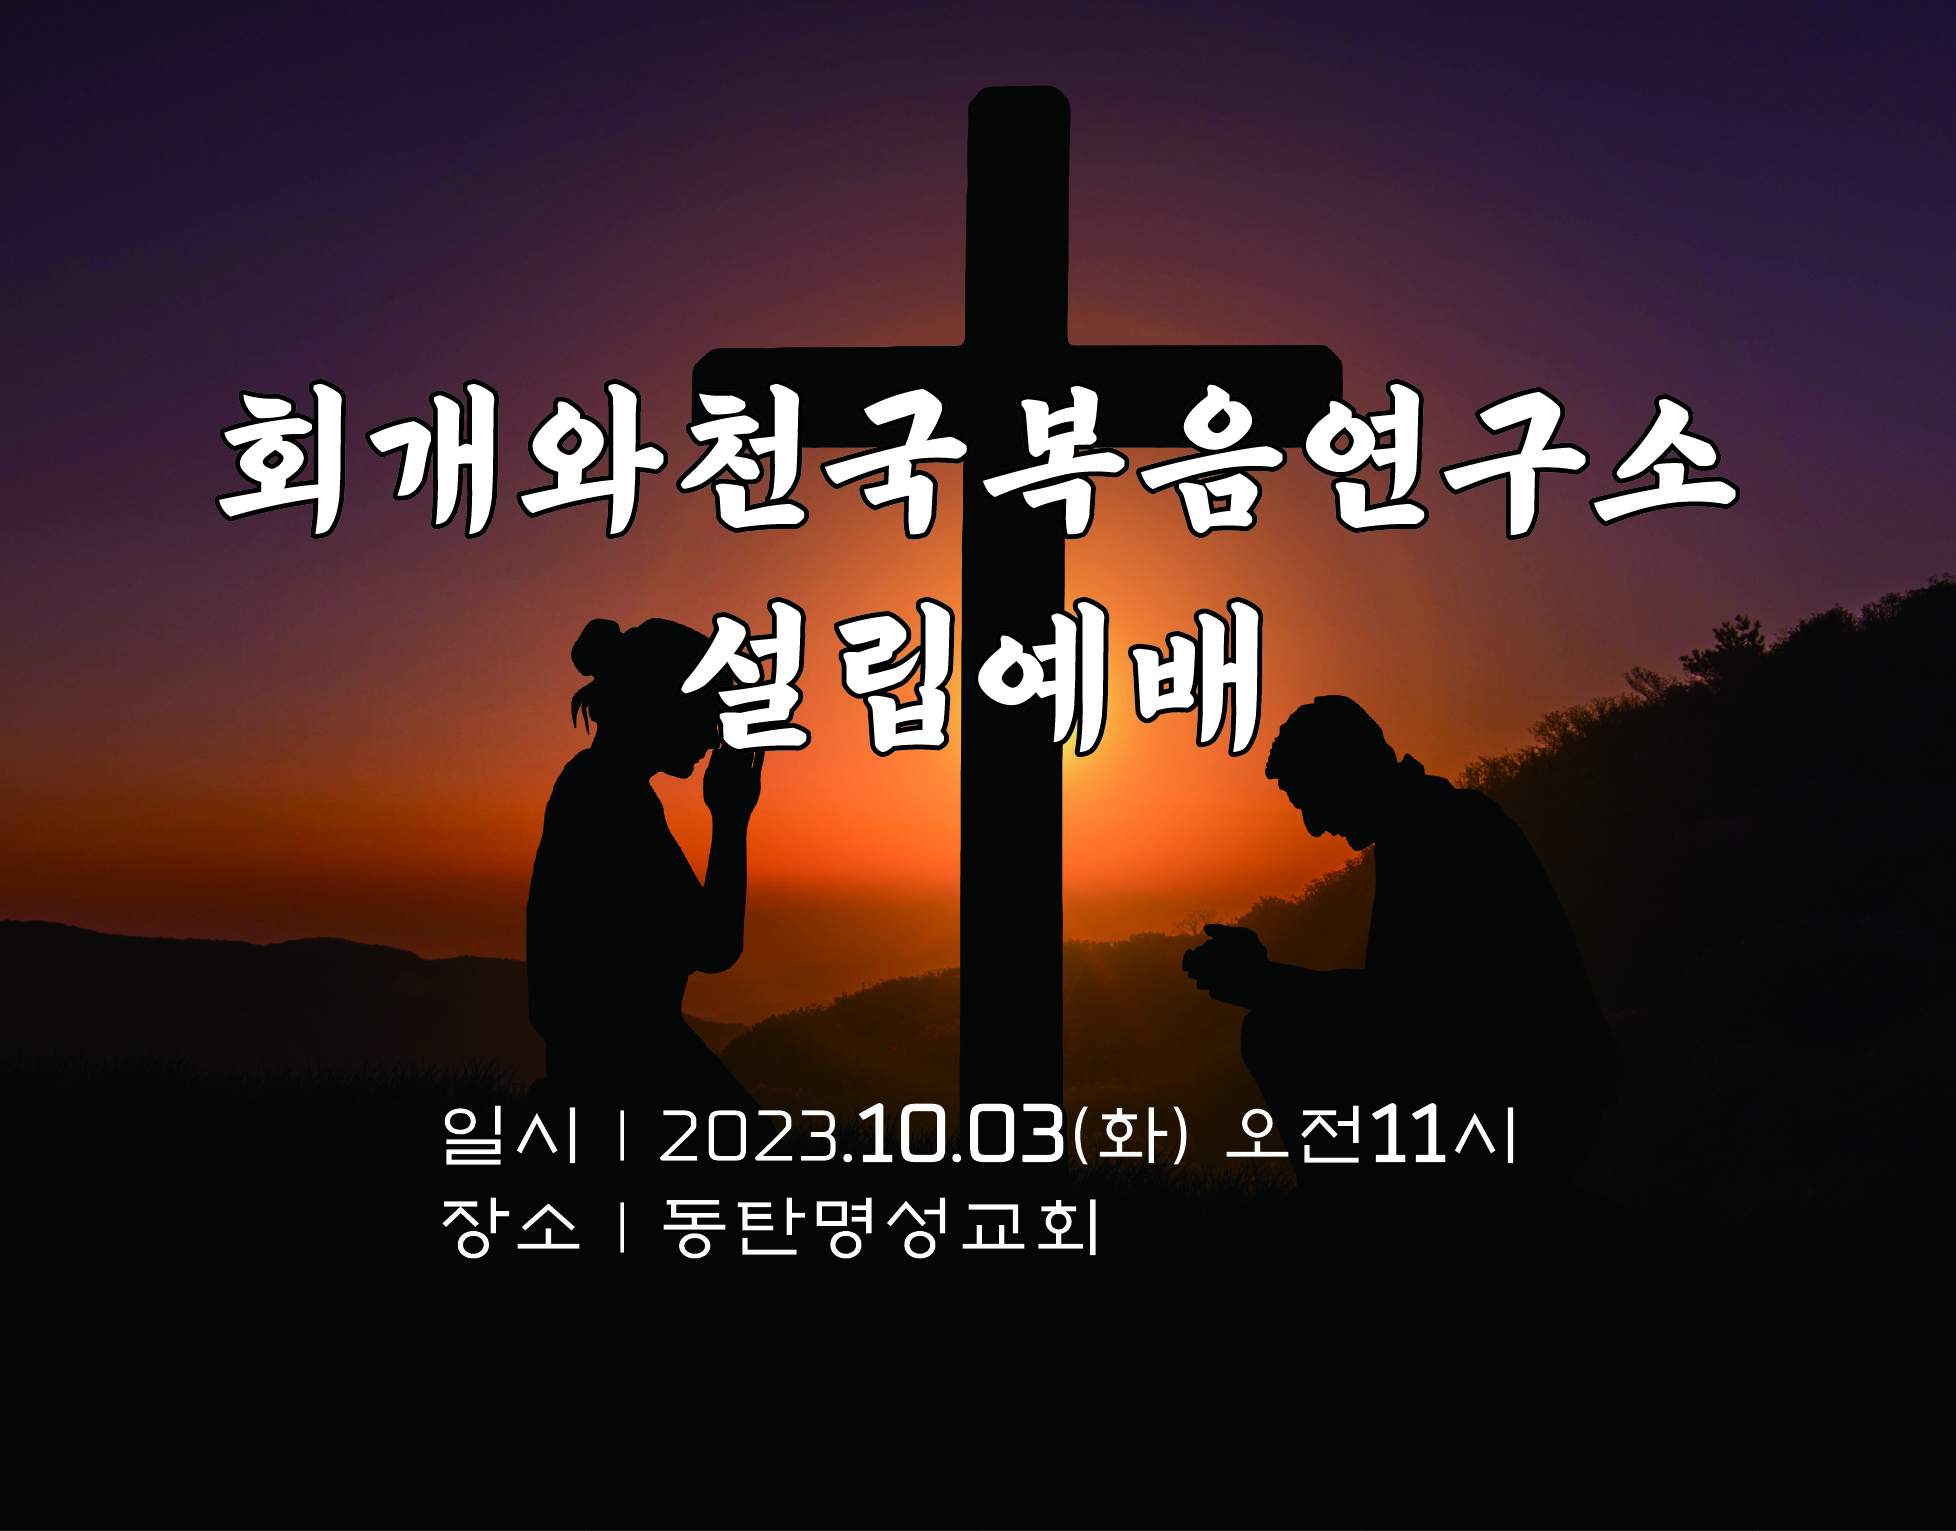 20230921_회개와천국복음연구소 설립예배 현수막.jpg